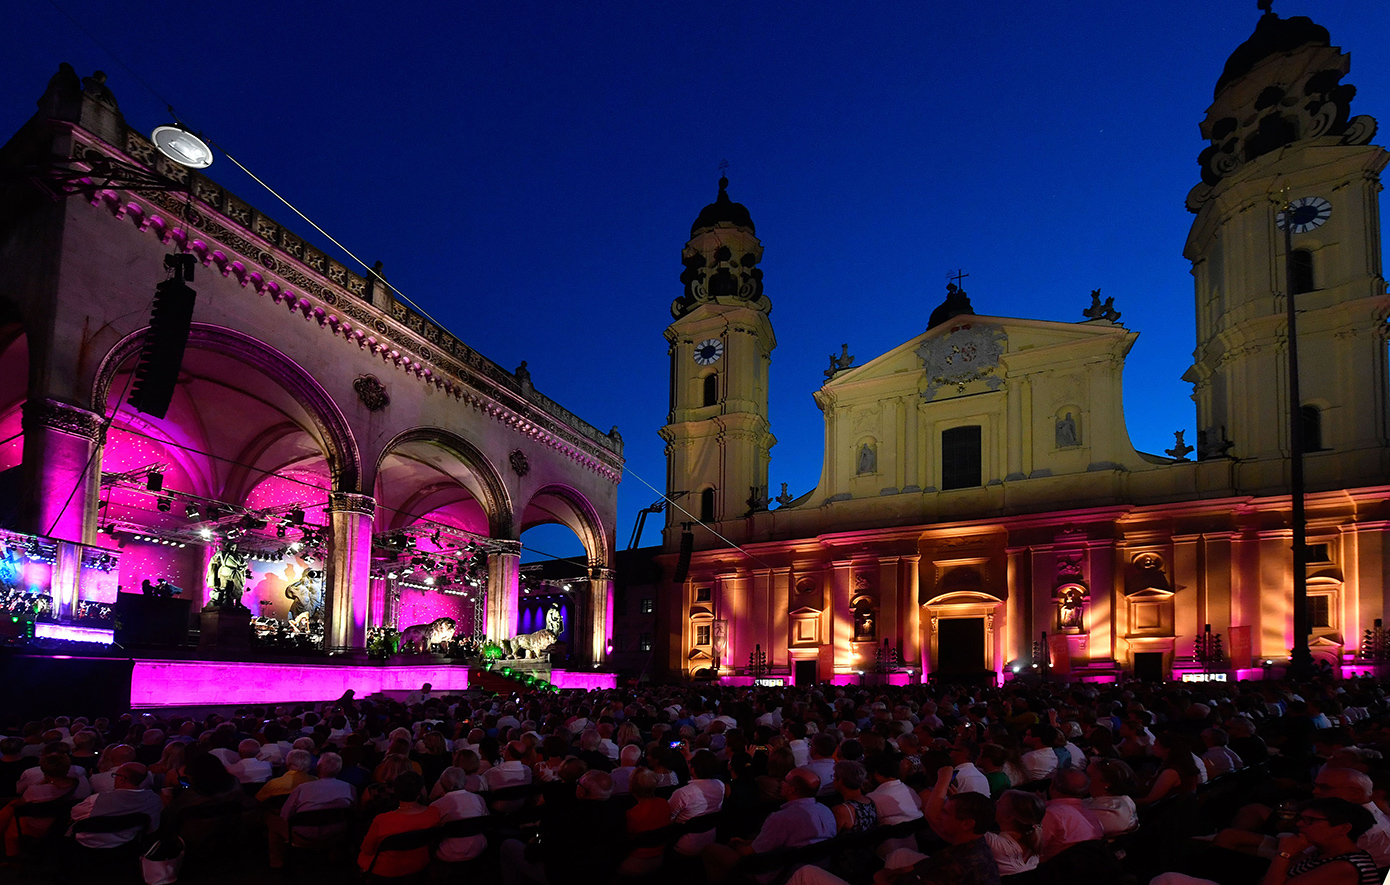 Προβολή συναυλίας στον Κήπο του Μεγάρου: The Odeonsplatz Concert